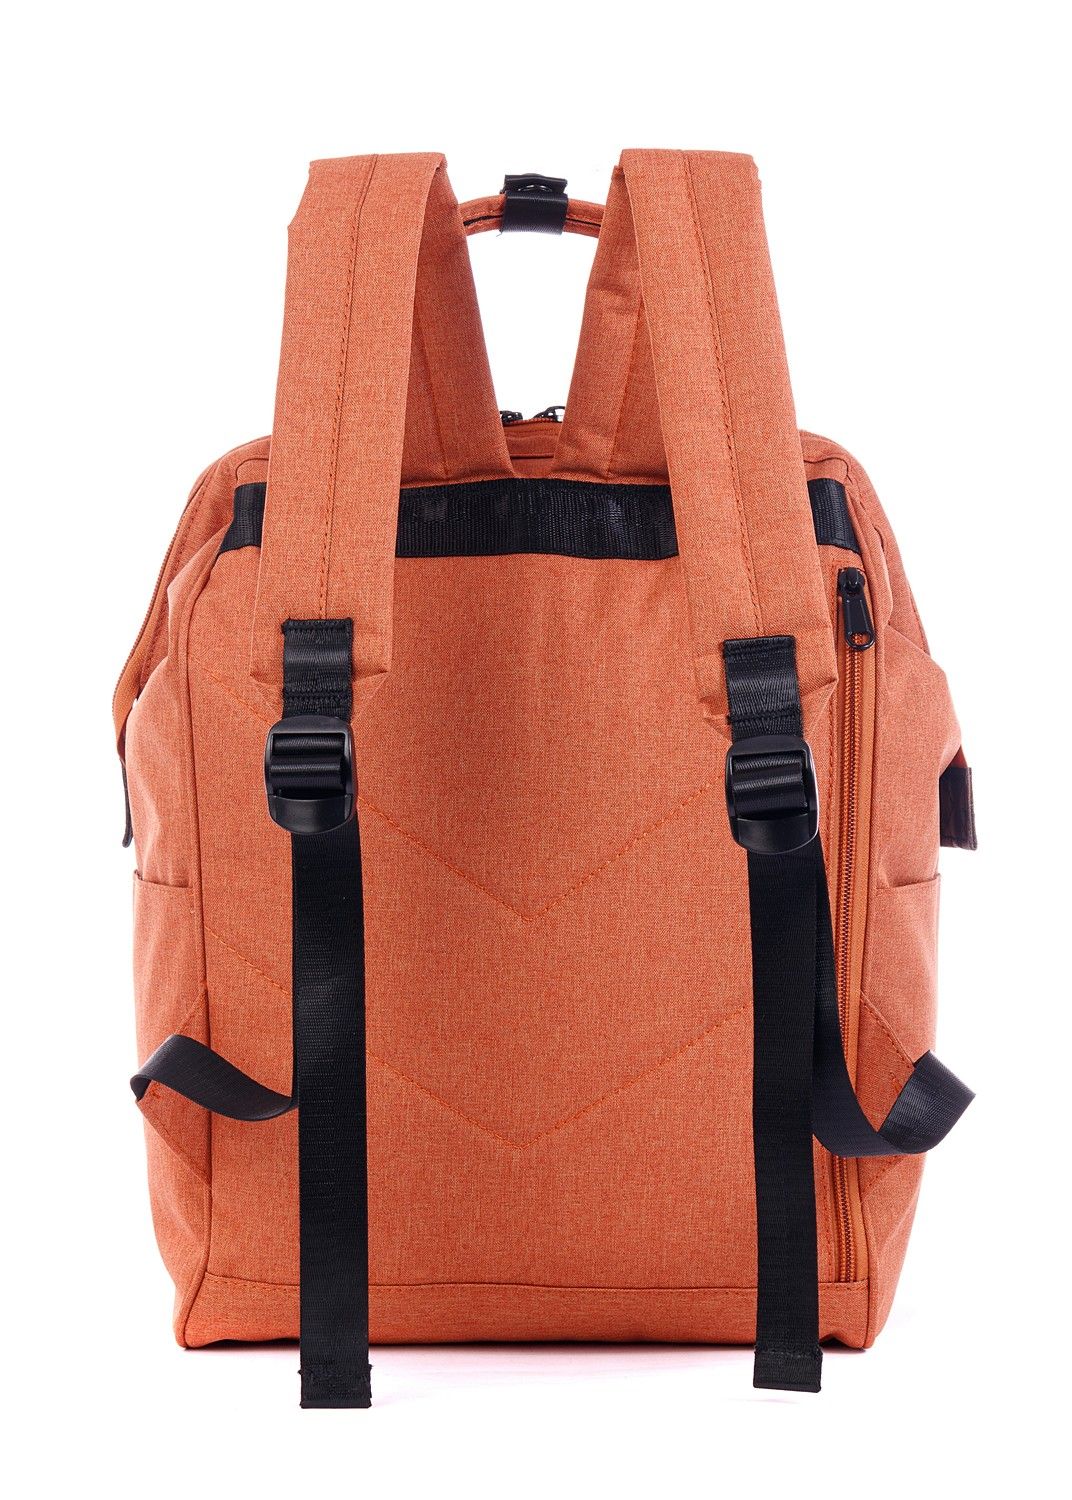 Рюкзак женский городской, оранжевый однотонный, со стандартными лямками, объем 18 л